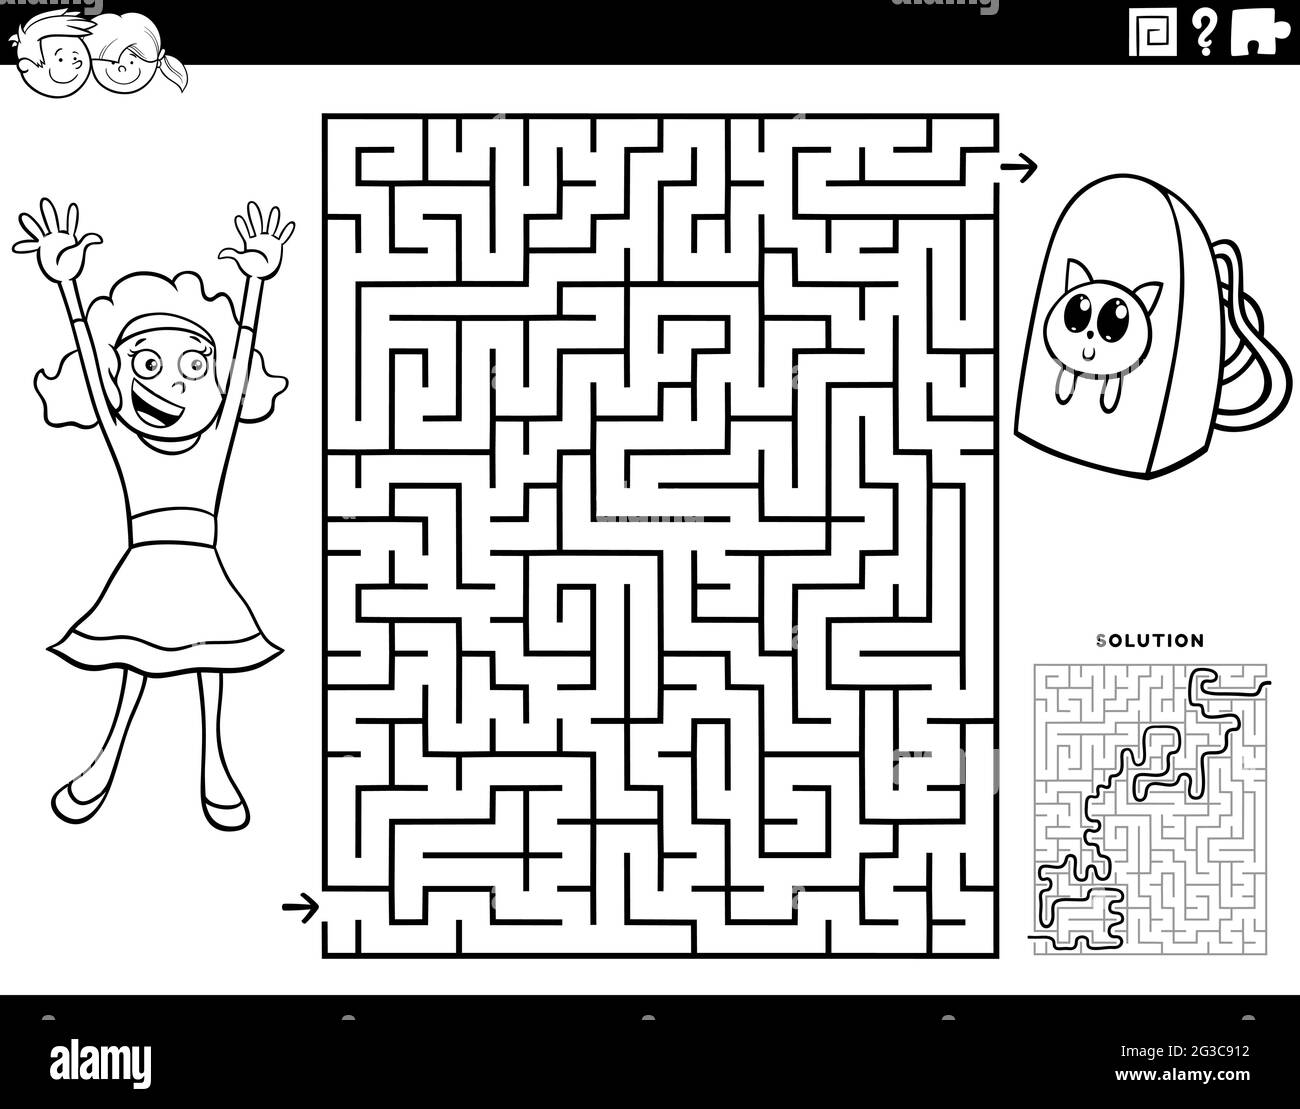 Ilustración de dibujos animados en blanco y negro del juego de rompecabezas de laberinto educativo para niños con carácter de chica y mochila para colorear página de libro Imagen Vector de -